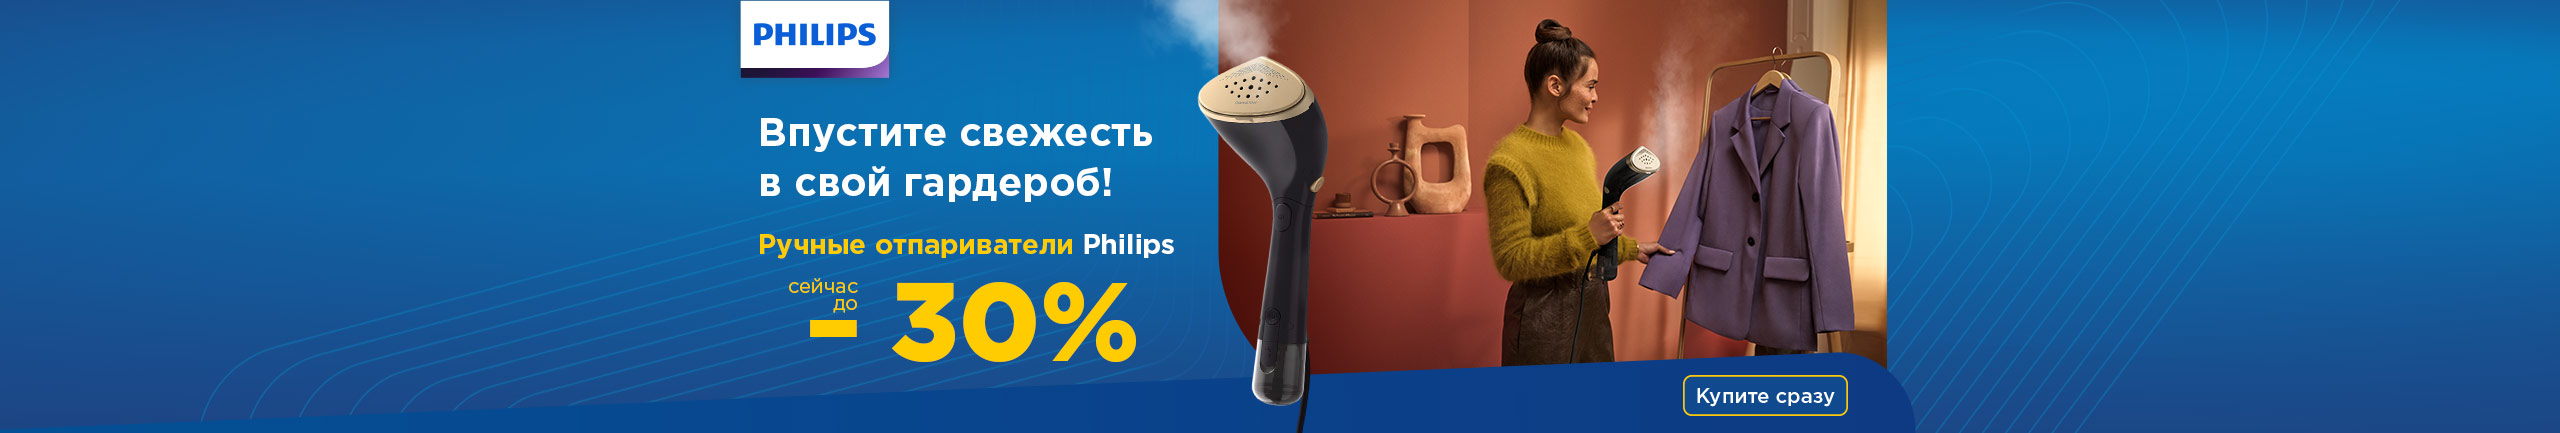 Ручные отпариватели Philips сейчас до -30%